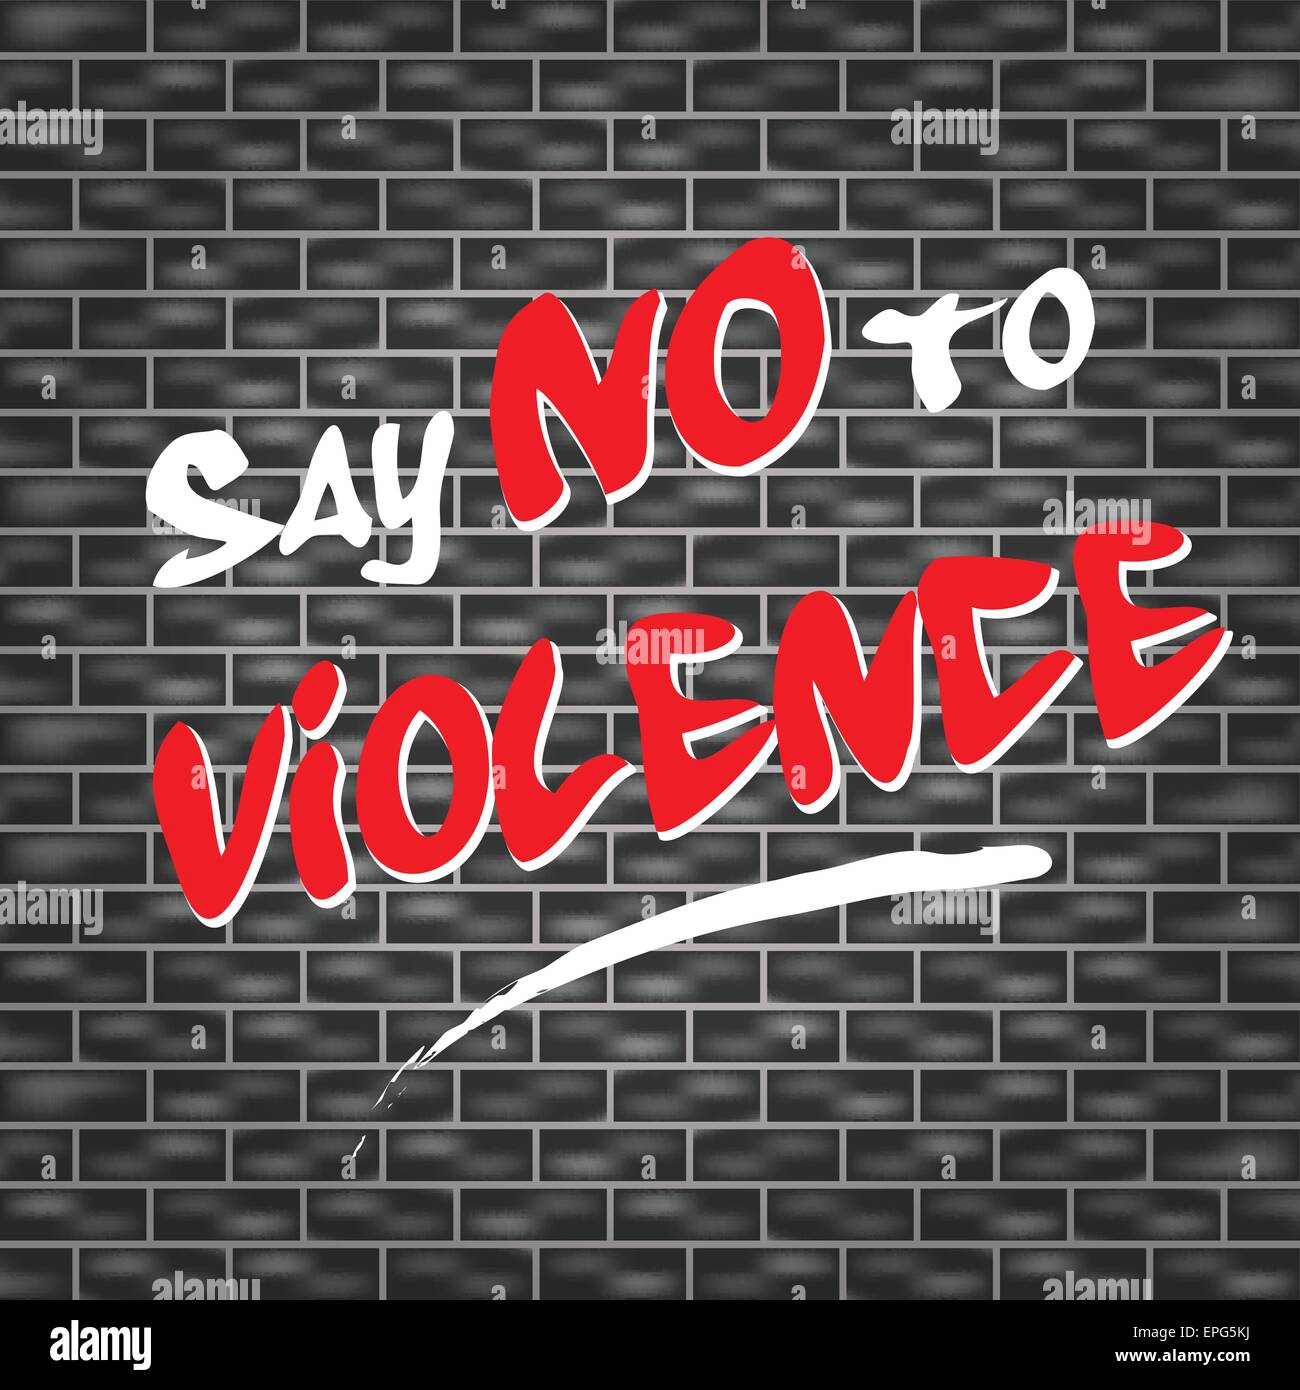 Illustrazione di graffiti per dire no alla violenza Illustrazione Vettoriale